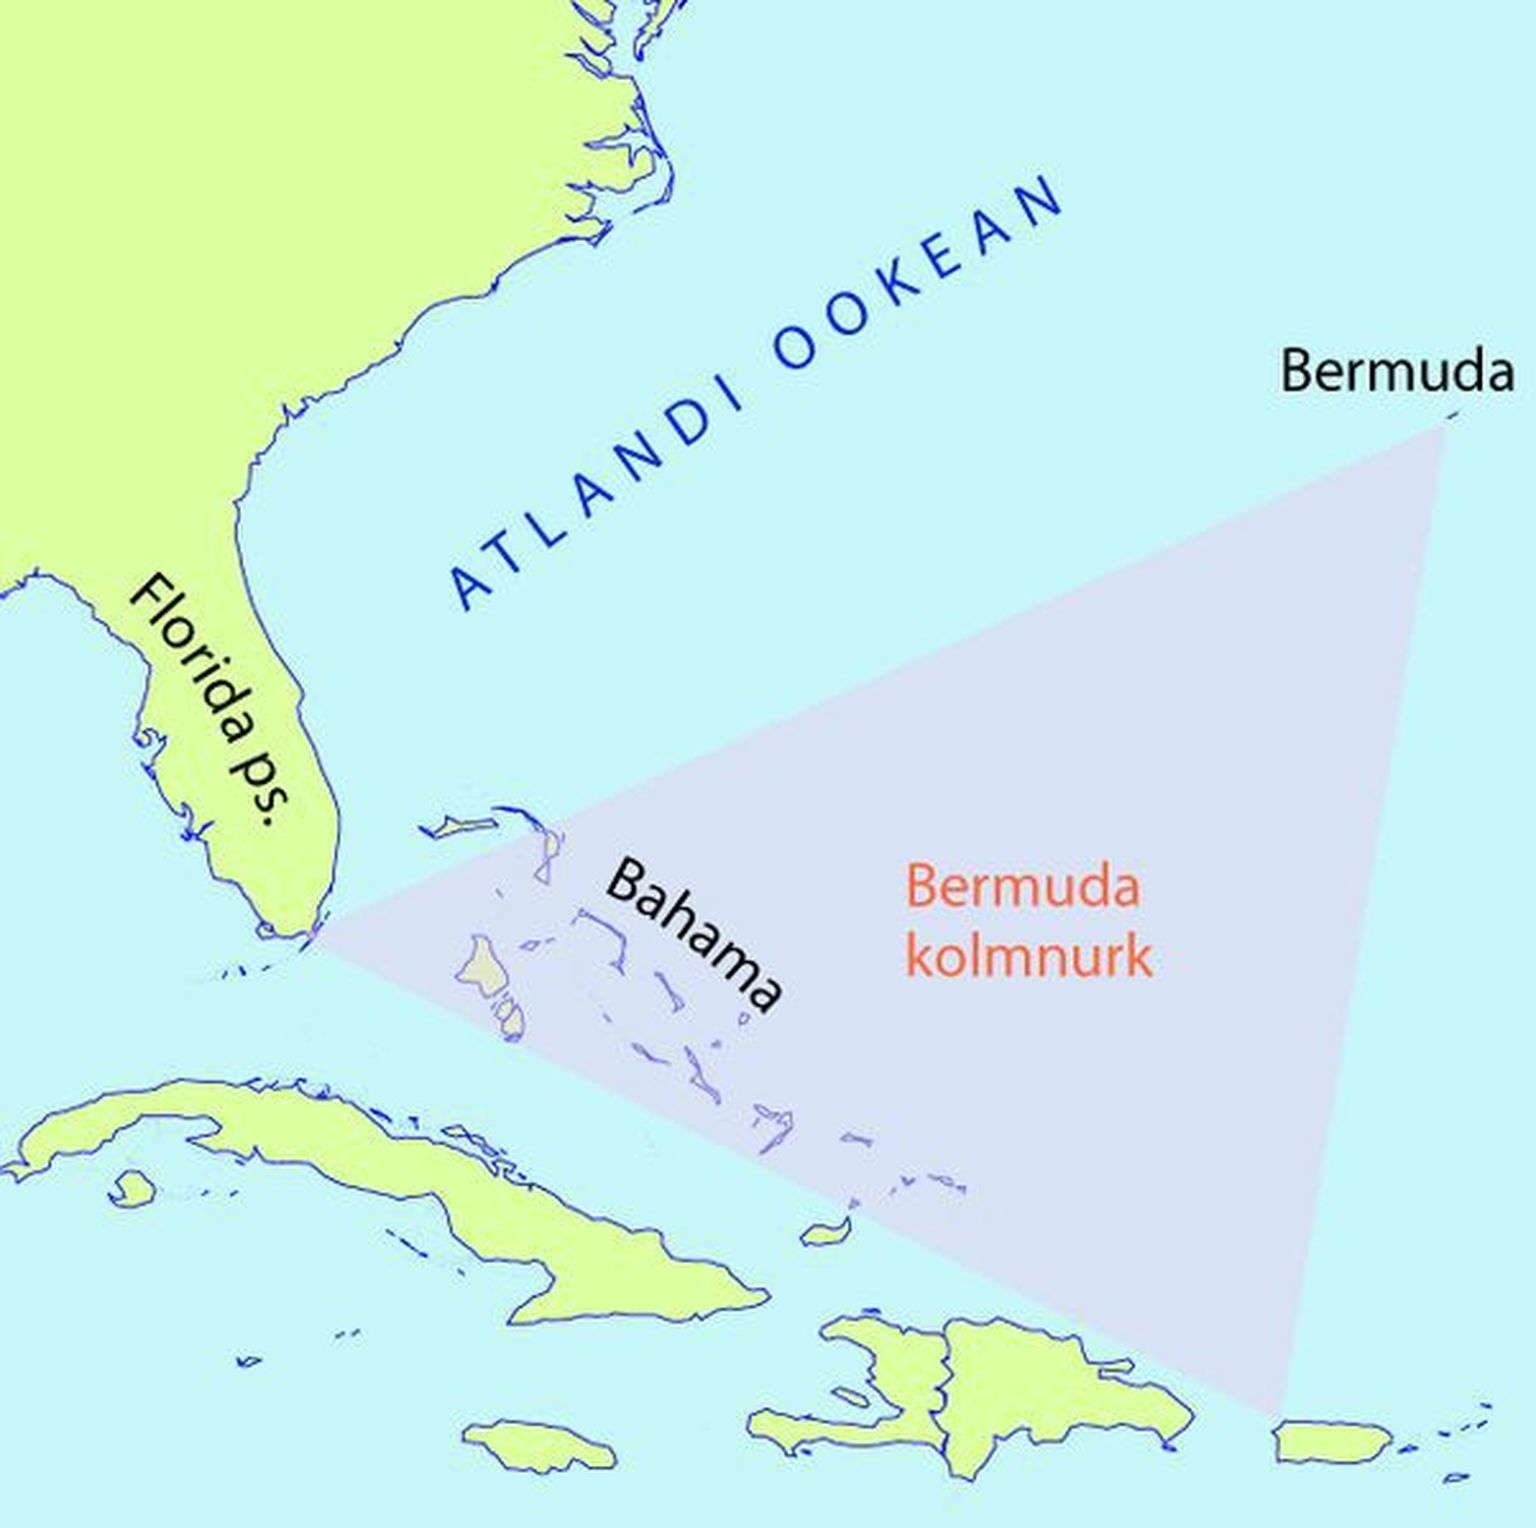 Bermuda kolmnurga kujutletav ala